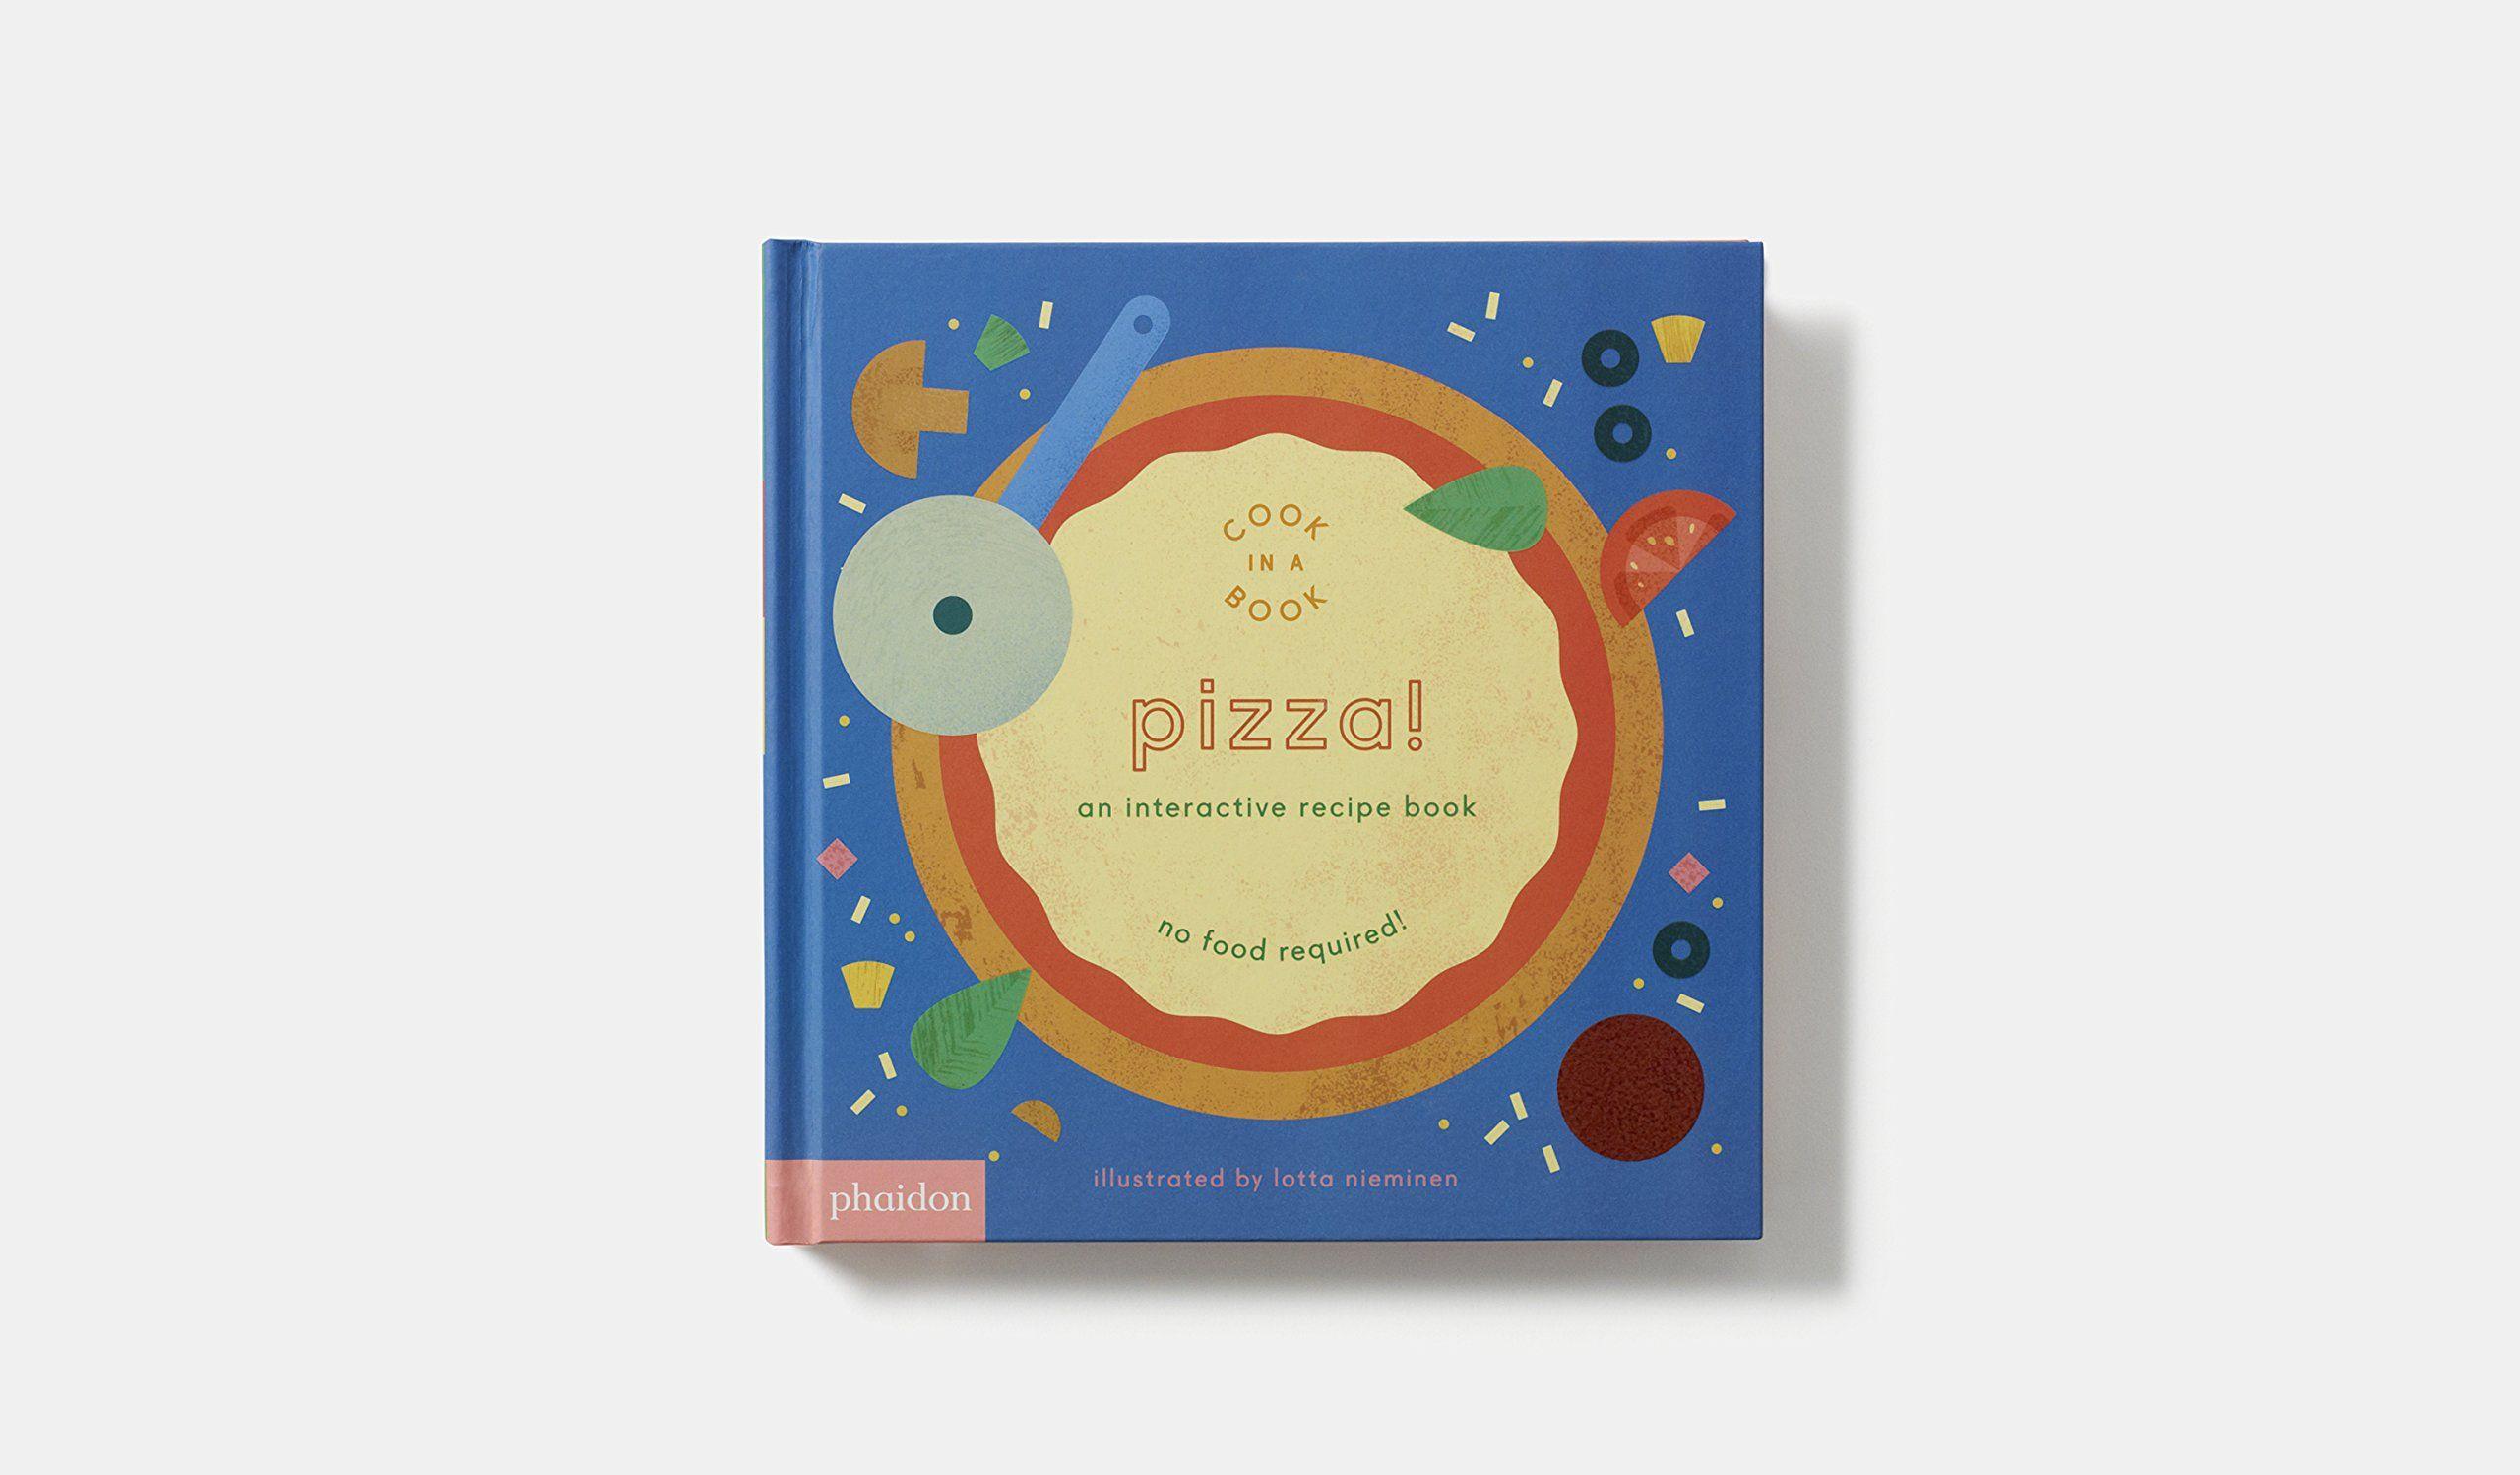 Ina Blue Bird Yellow Circle Logo - Pizza!: An Interactive Recipe Book (Cook In A Book): Amazon.co.uk ...